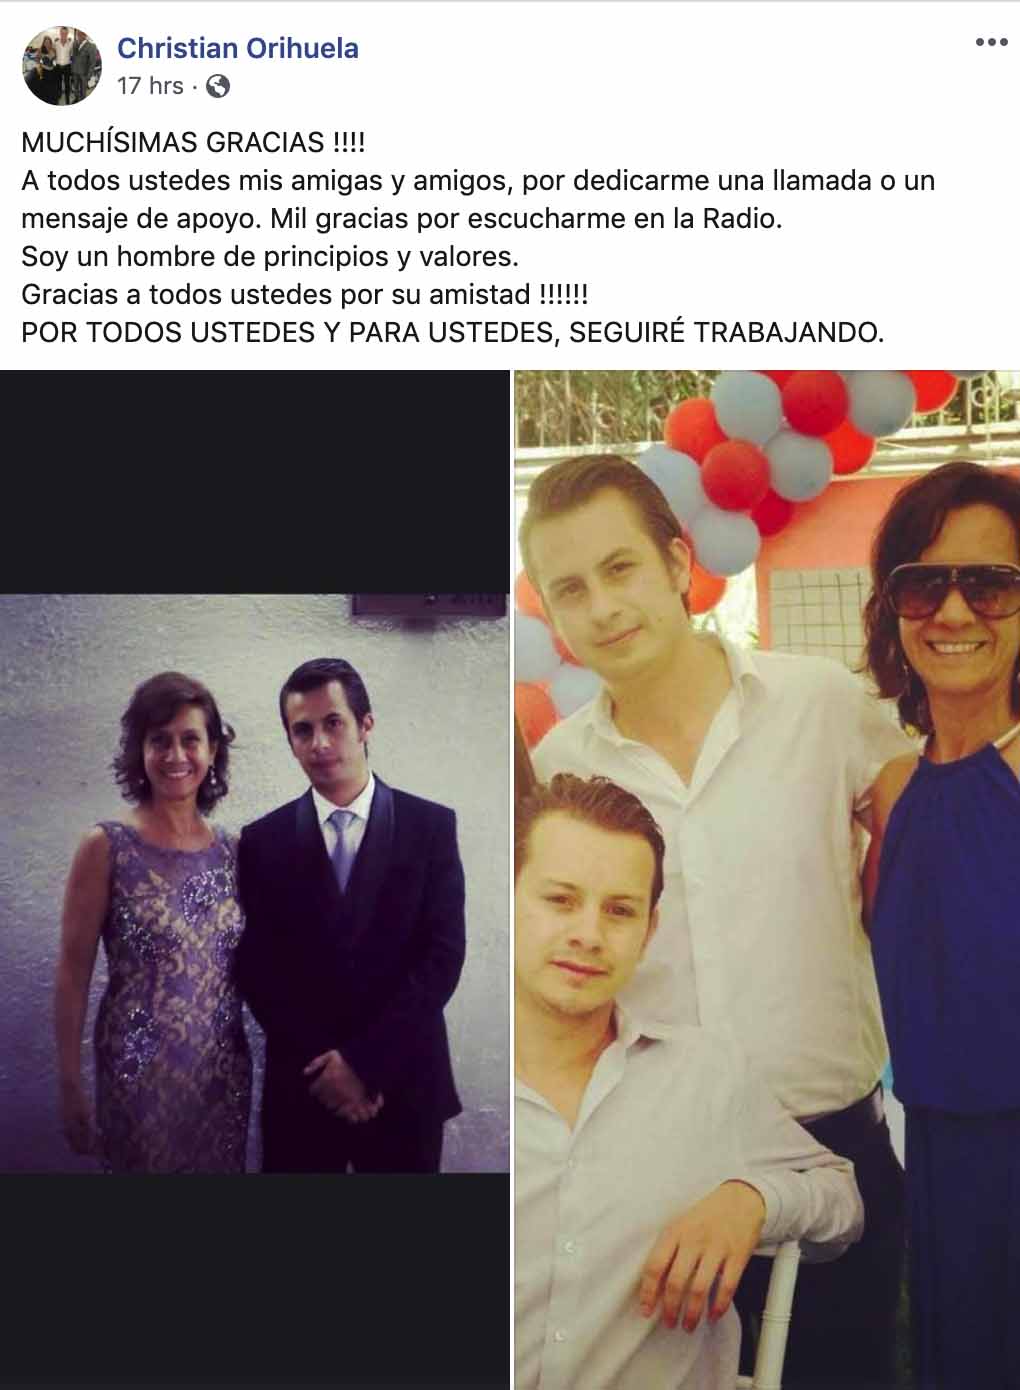 La respuesta de los seguidores de Christian Orihuela fue tal que publicó otra foto con su hermano fallecido pero ahora con su mamá.